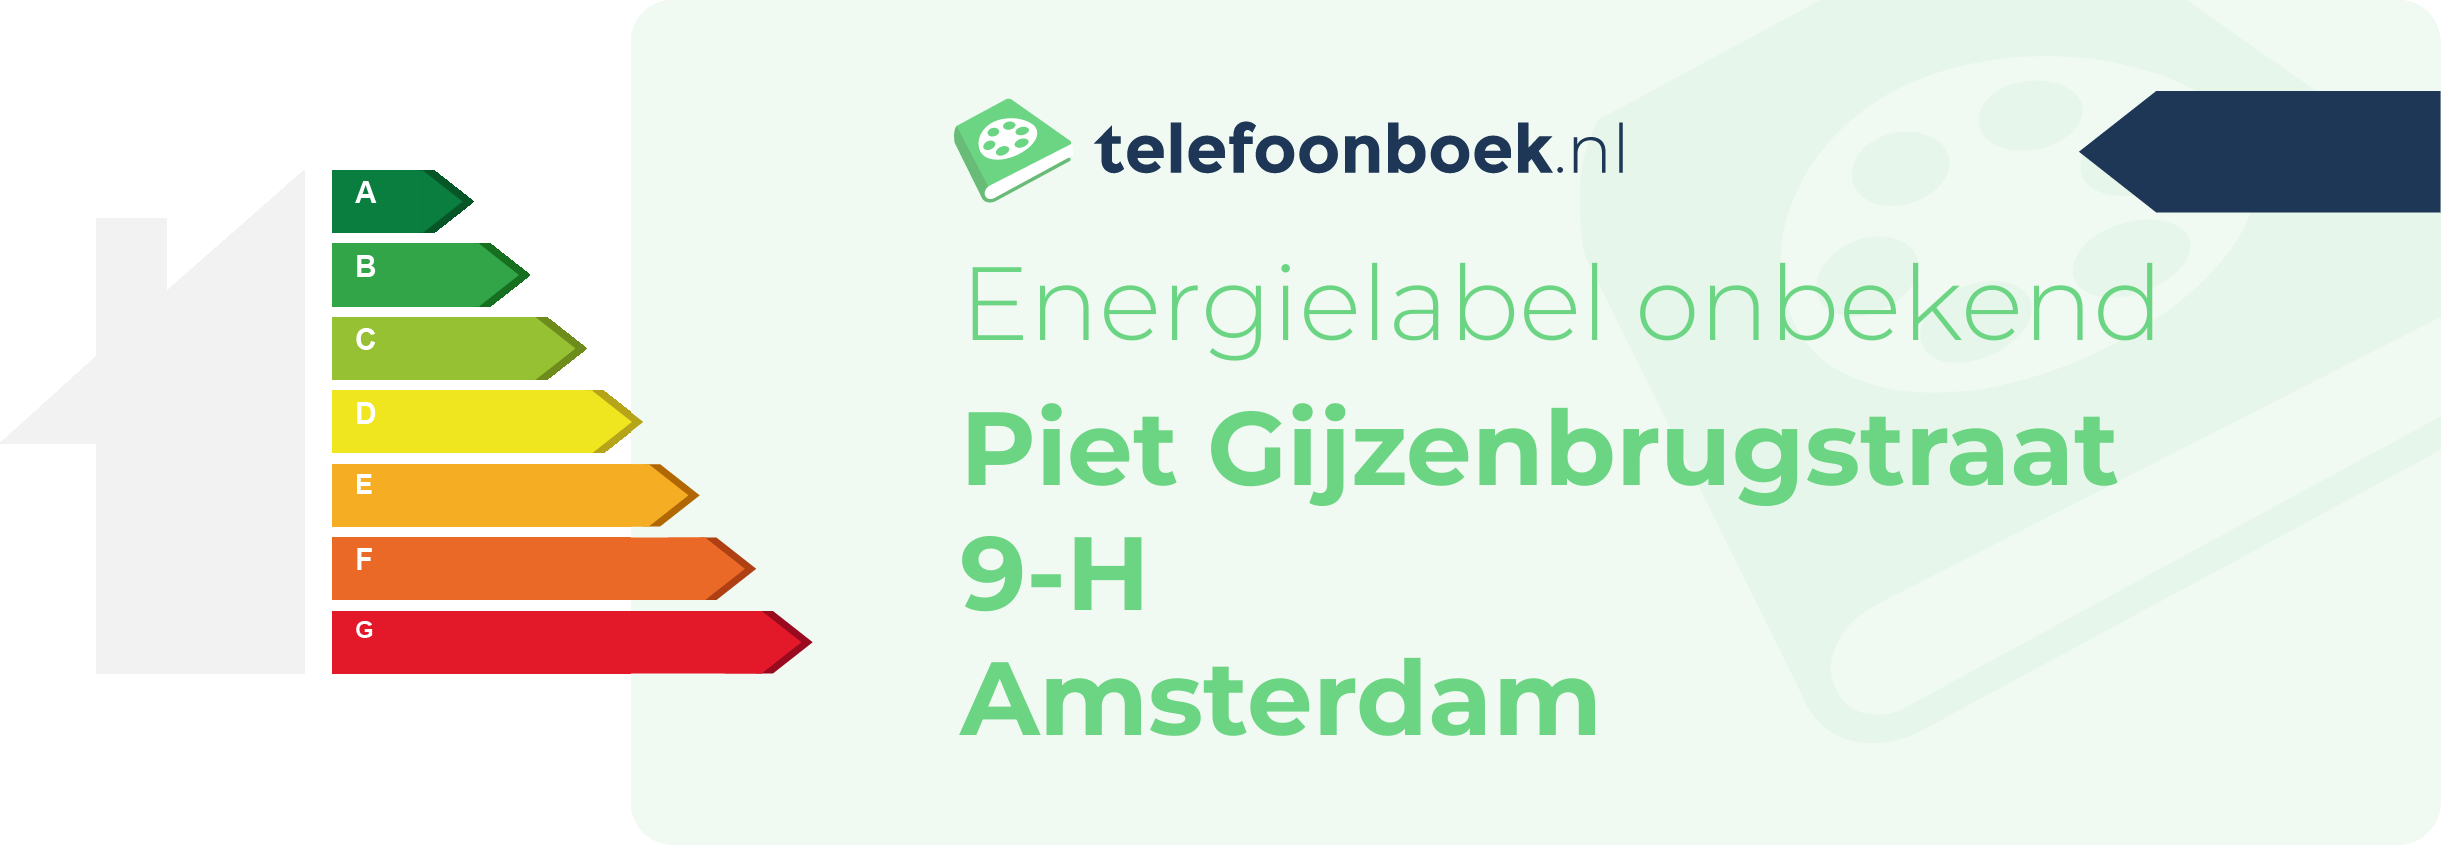 Energielabel Piet Gijzenbrugstraat 9-H Amsterdam